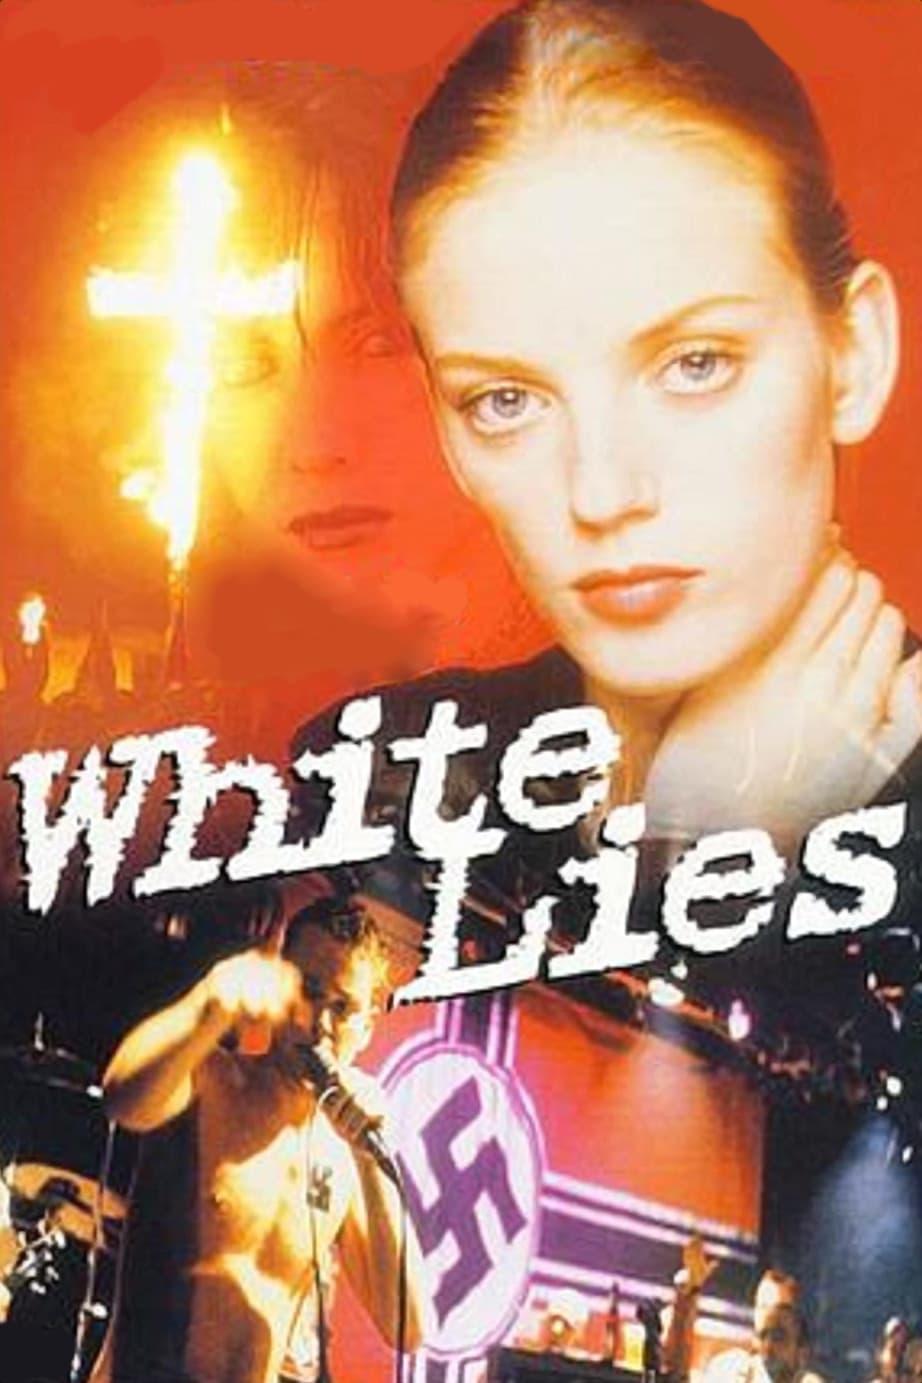 White Lies – Das Leben ist zu kurz, um ehrlich zu sein poster